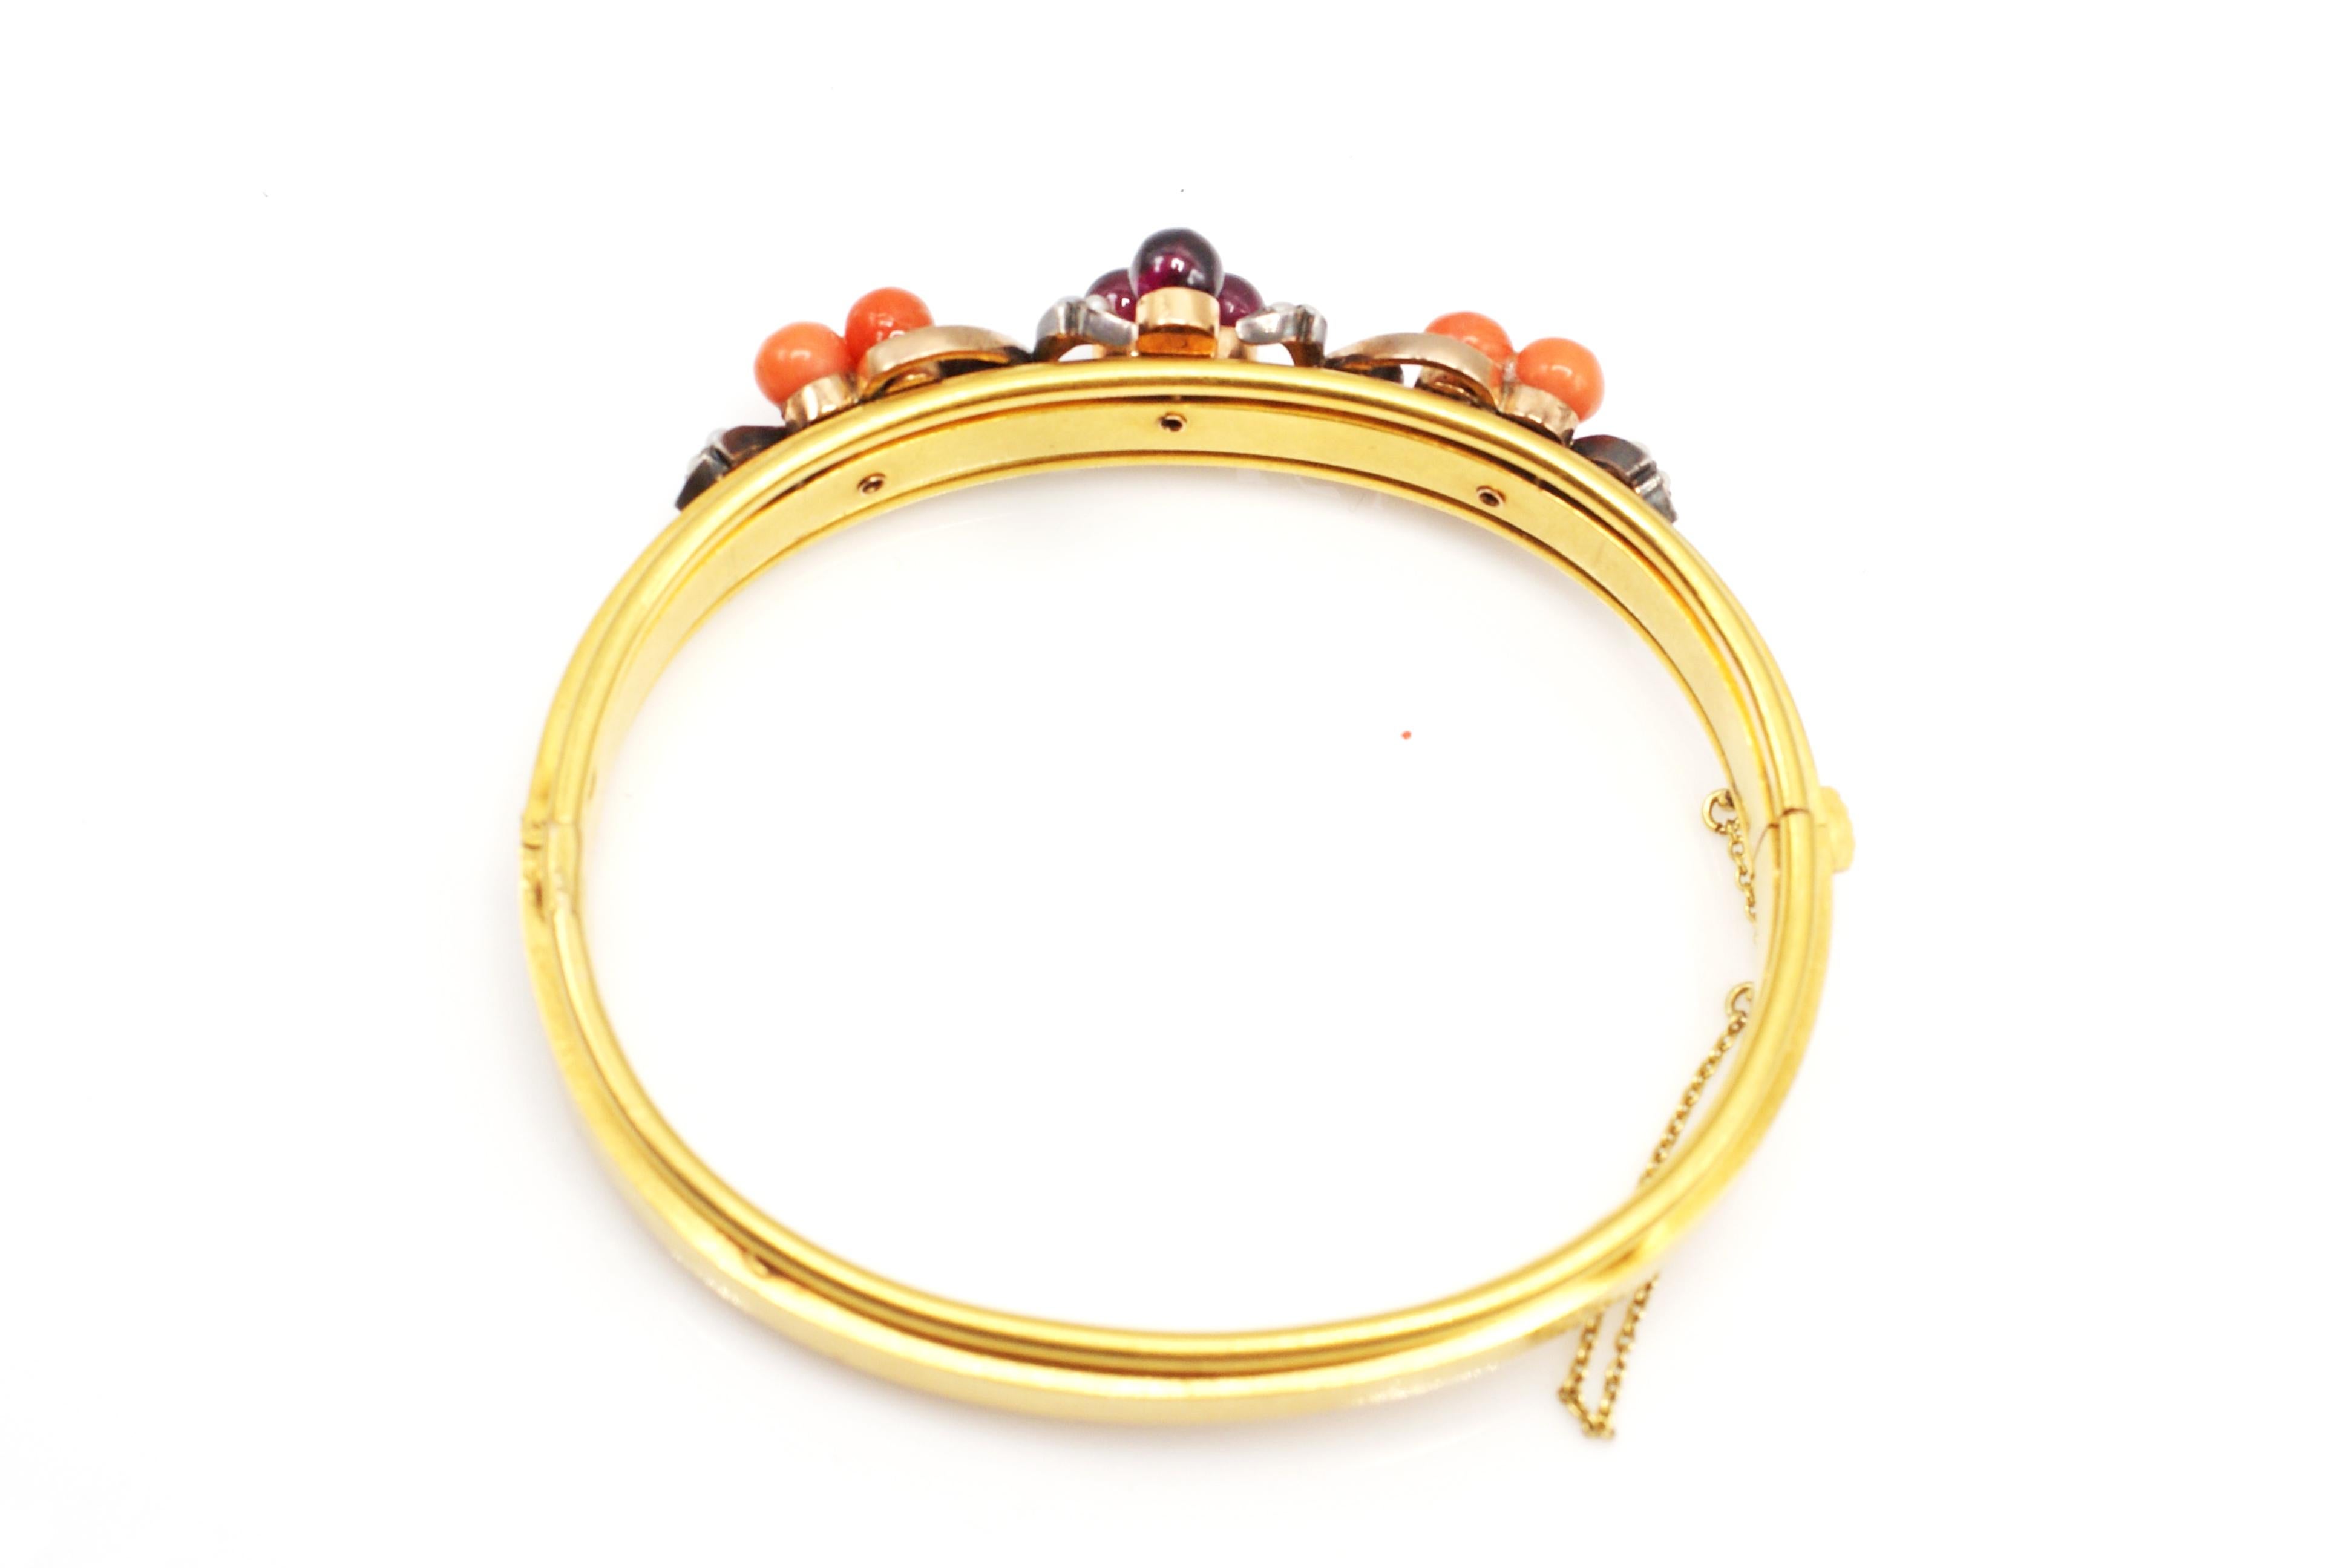 Ce charmant bracelet à charnière français ancien a été réalisé de main de maître en or jaune 18 carats. 3 perles rondes de grenat de couleur bordeaux sont serties au centre et 3 perles de corail rose-orange parfaitement assorties de part et d'autre.